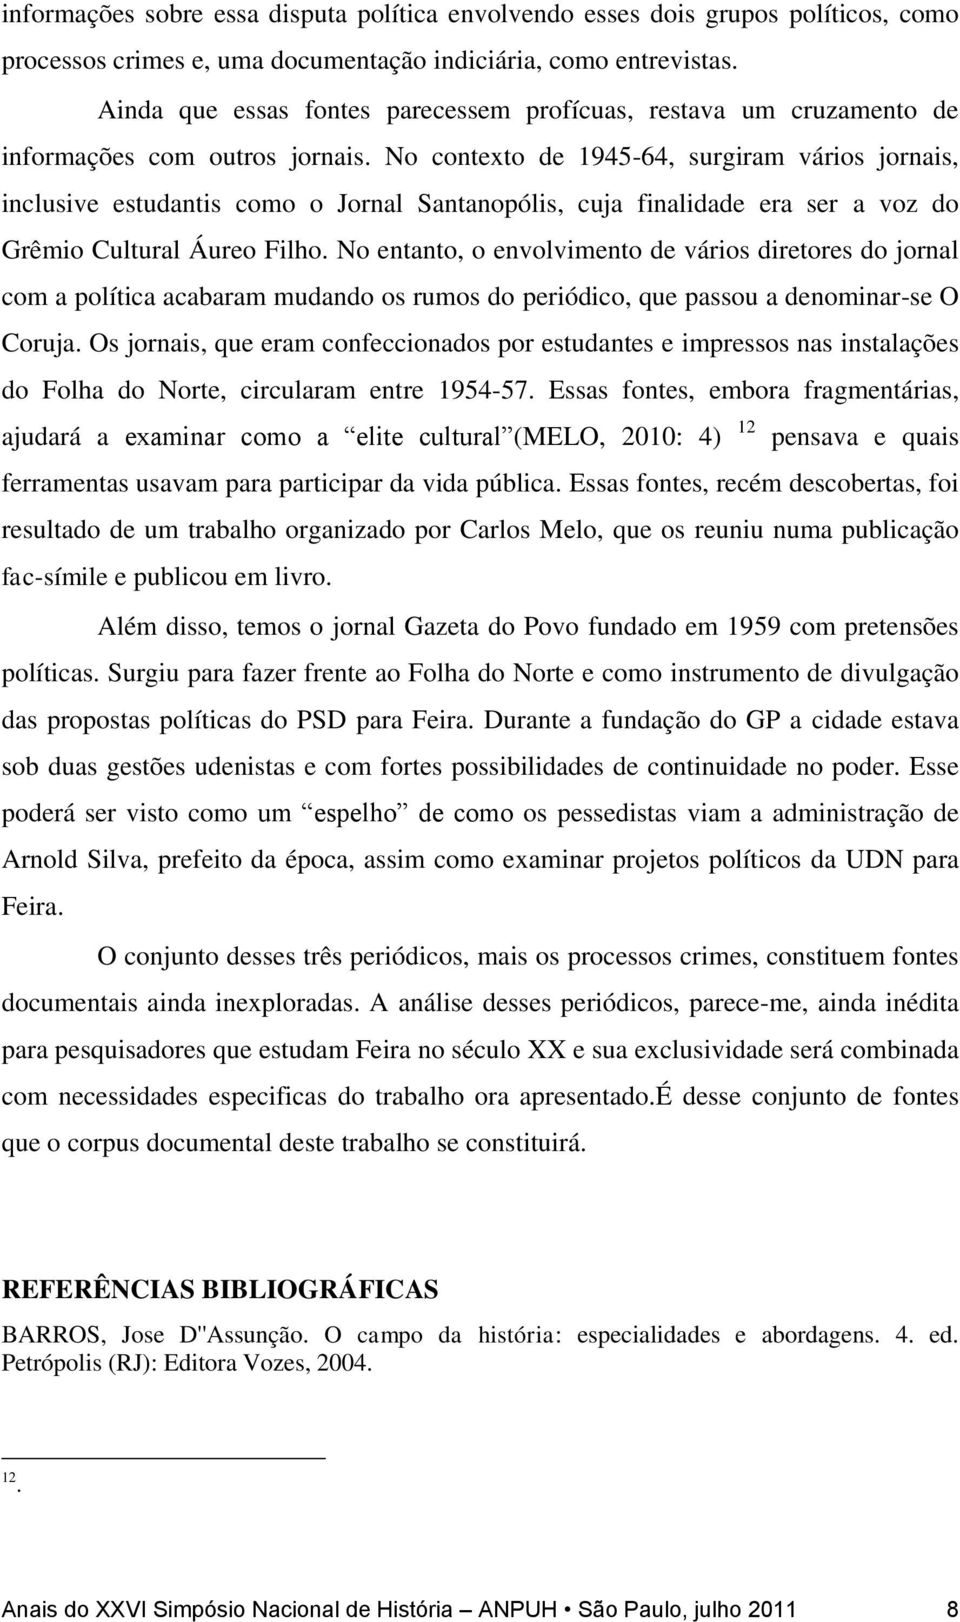 No contexto de 1945-64, surgiram vários jornais, inclusive estudantis como o Jornal Santanopólis, cuja finalidade era ser a voz do Grêmio Cultural Áureo Filho.